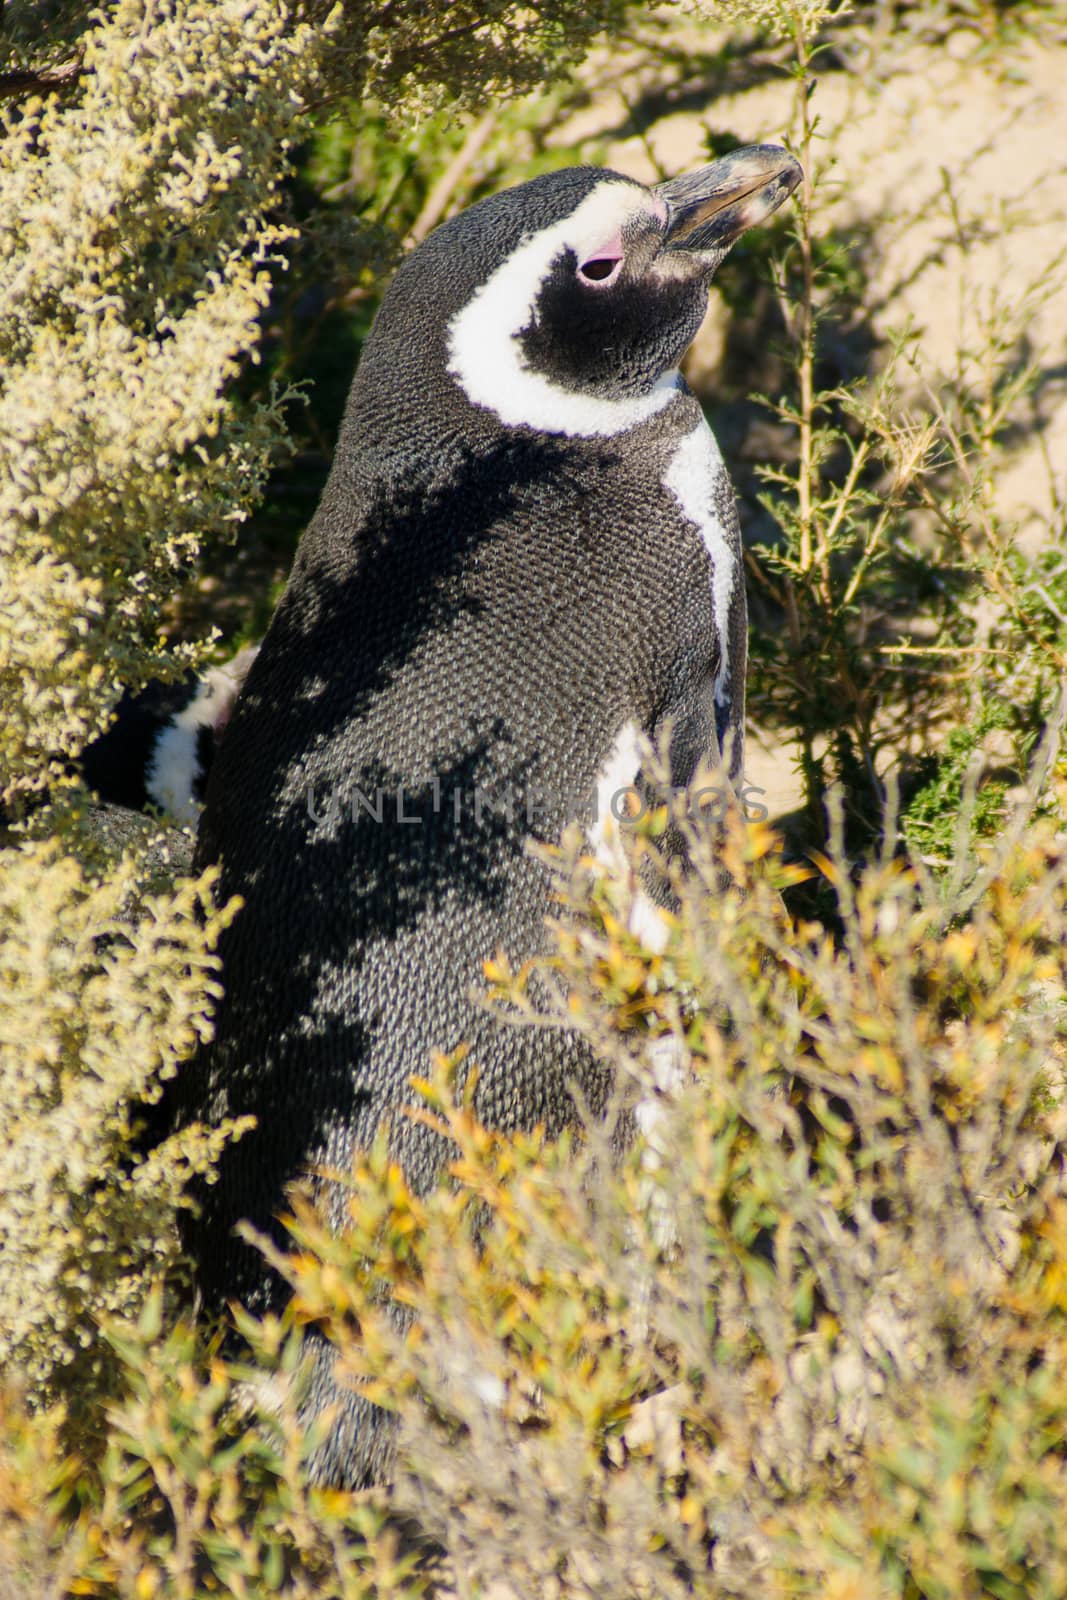 Magellanic Penguin in Valdes peninsula, Argentina